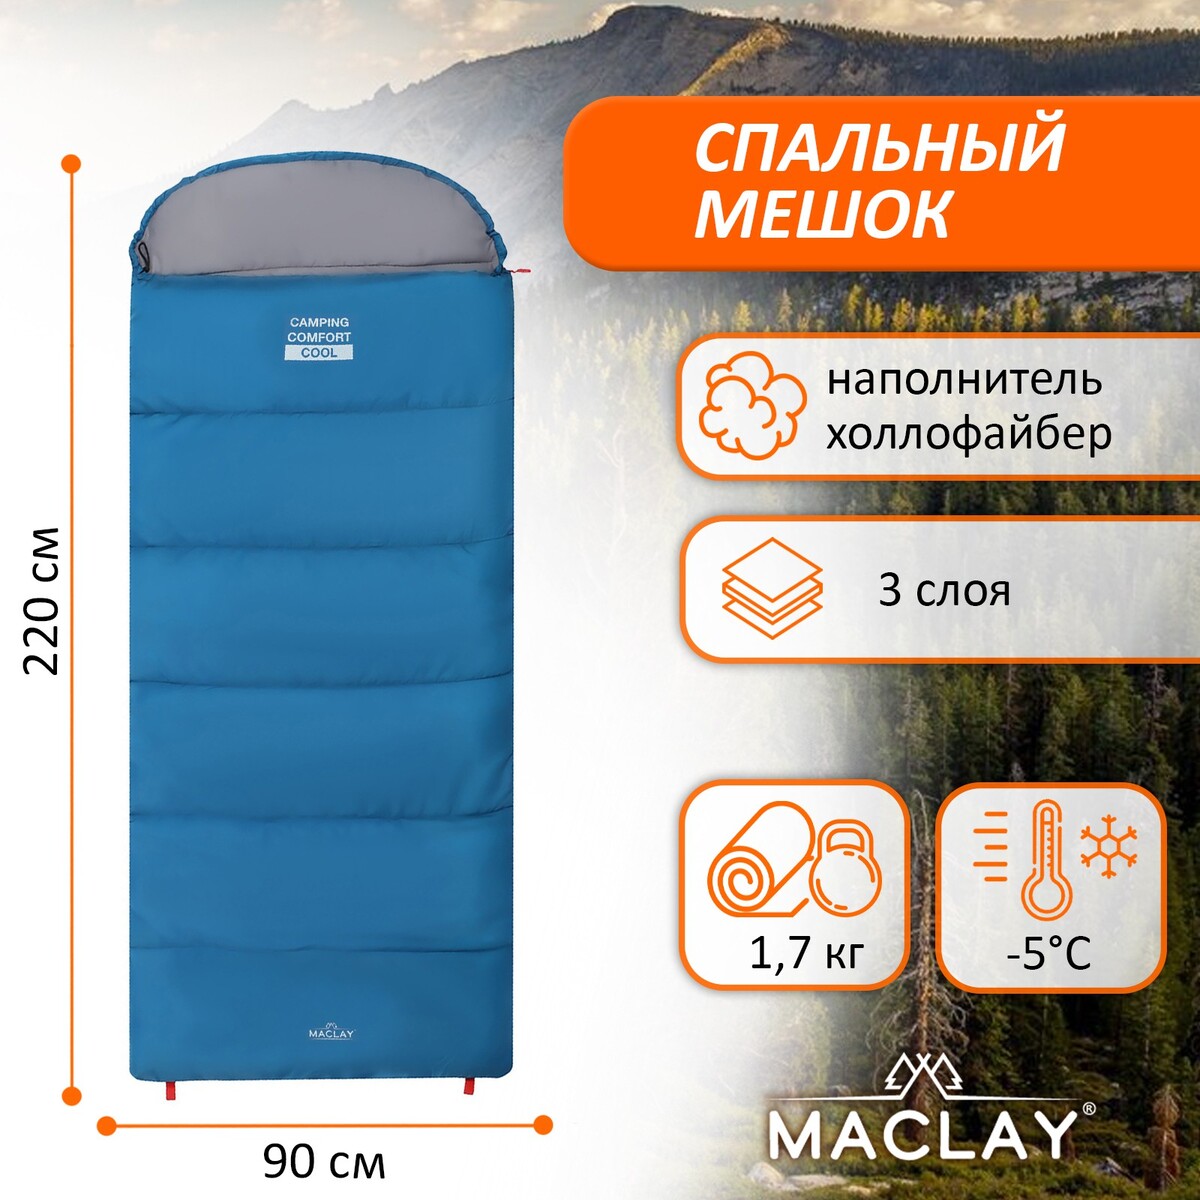 Спальный мешок maclay camping comfort cool, 3-слойный, левый, 220х90 см, -5/+10°с спальный мешок maclay camping comfort cold 4 слойный левый 220х90 см 10 5°с